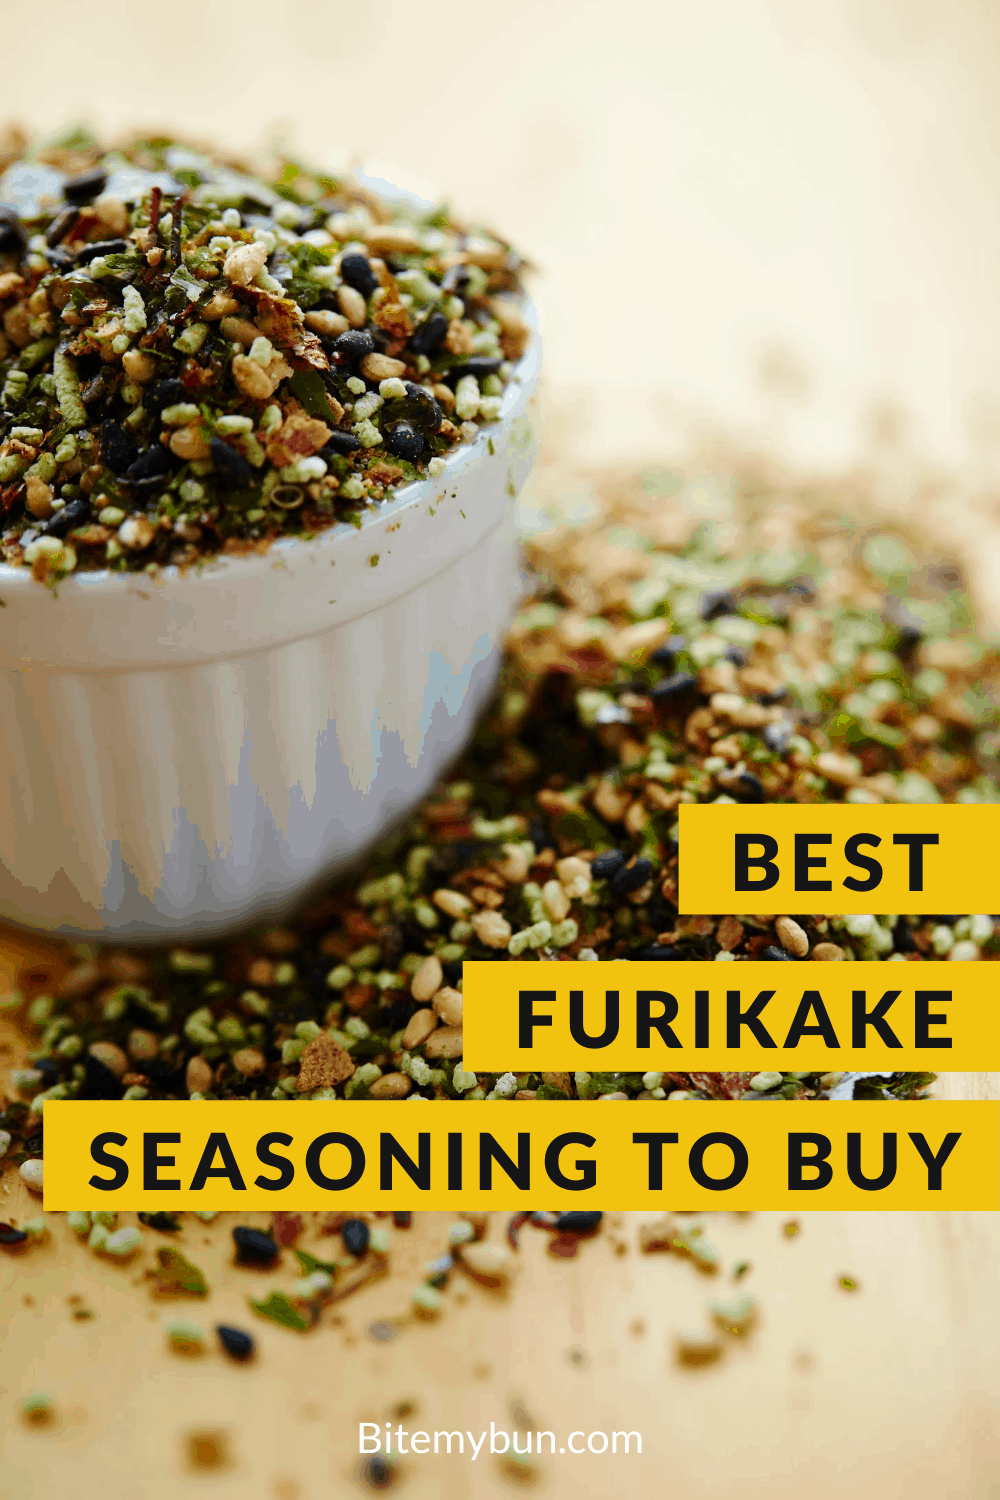 Best Furikake seasoningbto buy